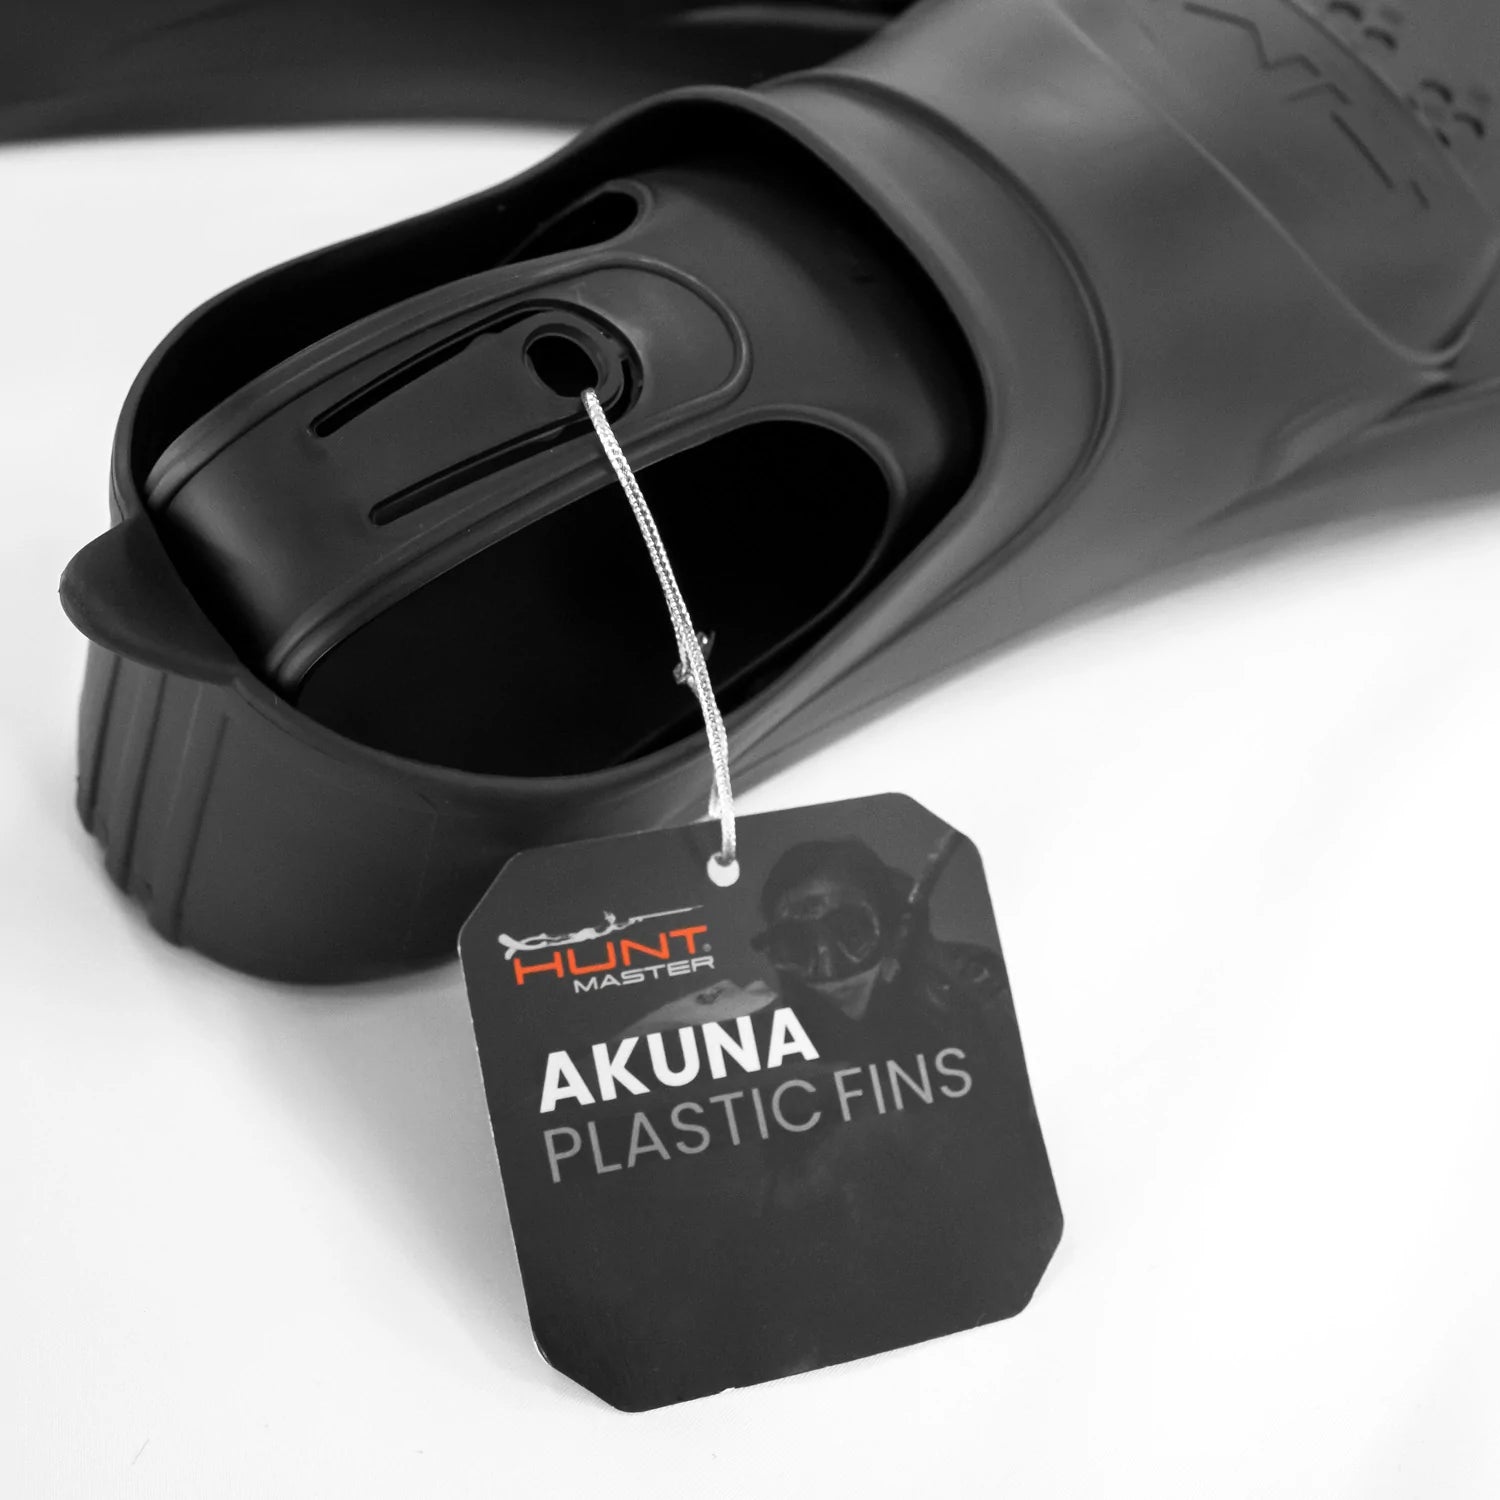 Huntmaster Akuna Plastic Fins